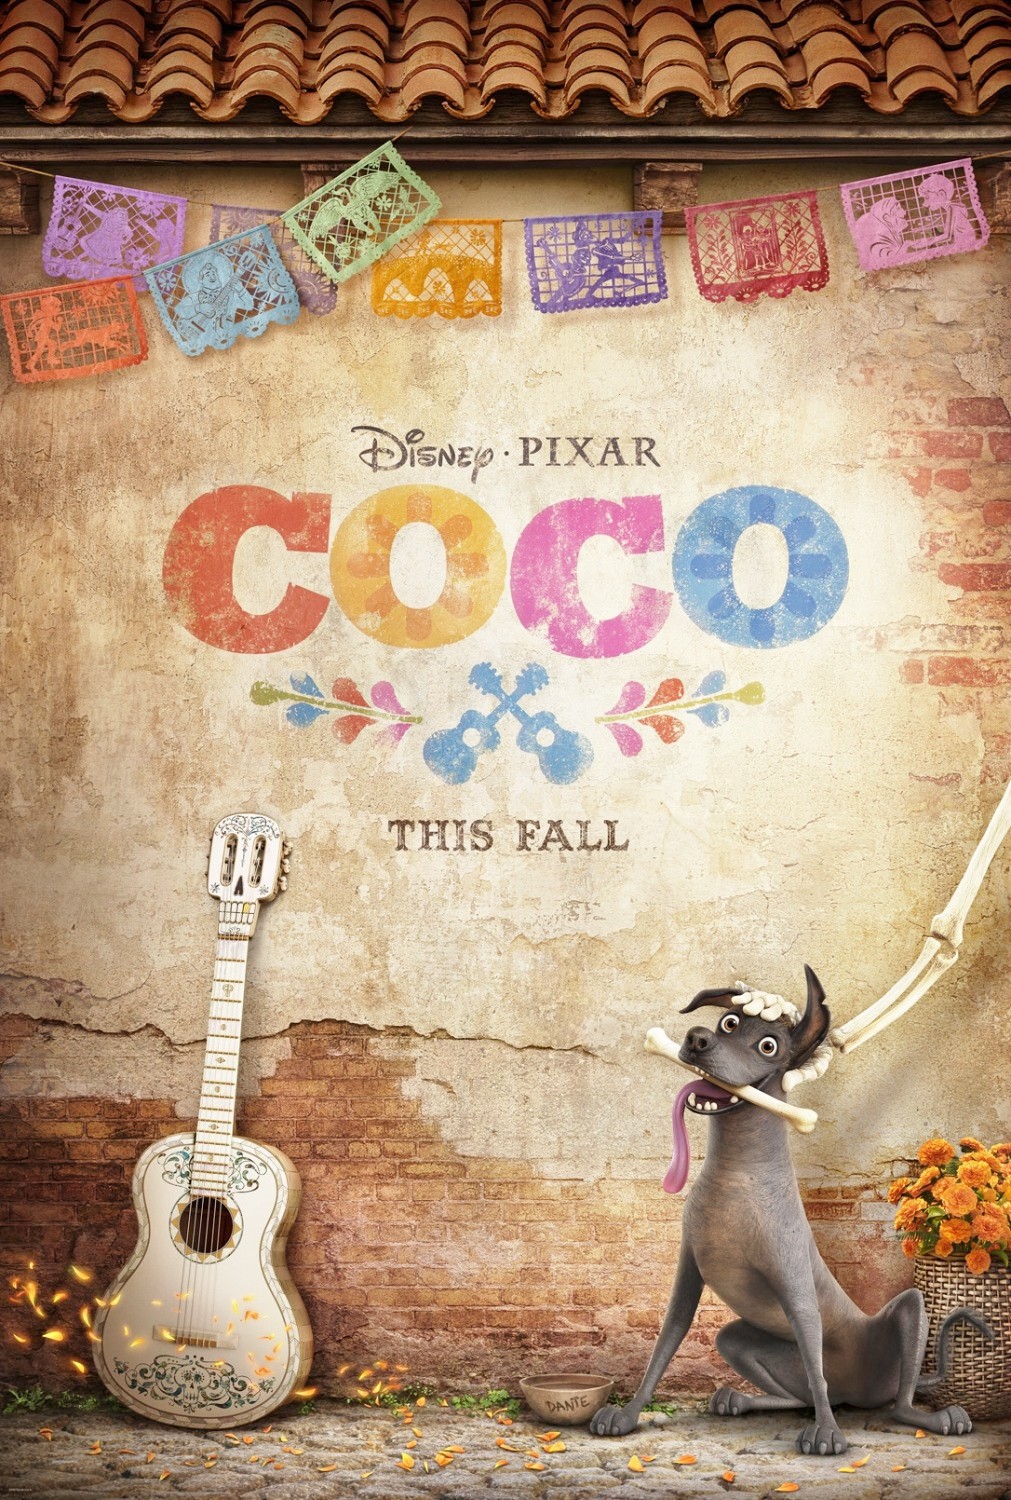 coco-nuovo-poster-del-film-danimazione-disney-pixar-2.jpg